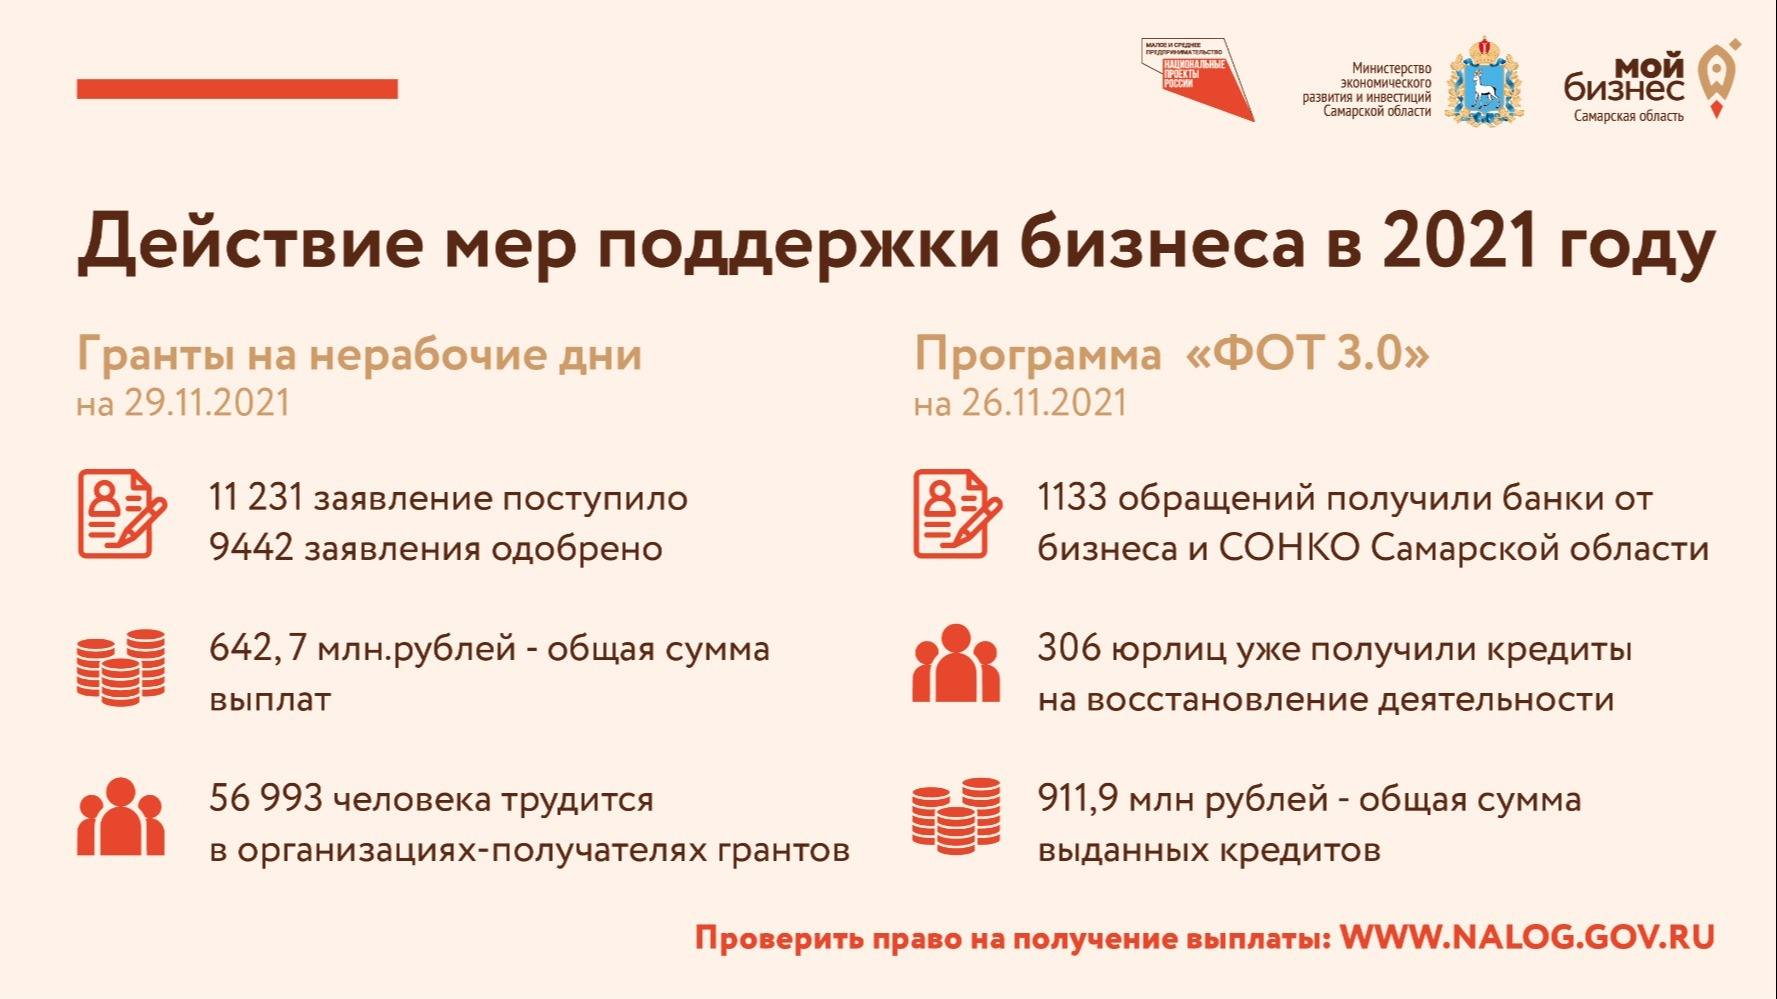 Более 1,5 млрд рублей из федерального бюджета получил малый и средний бизнес Самаркой области, пострадавший в результате введения нерабочих дней в 2021 году